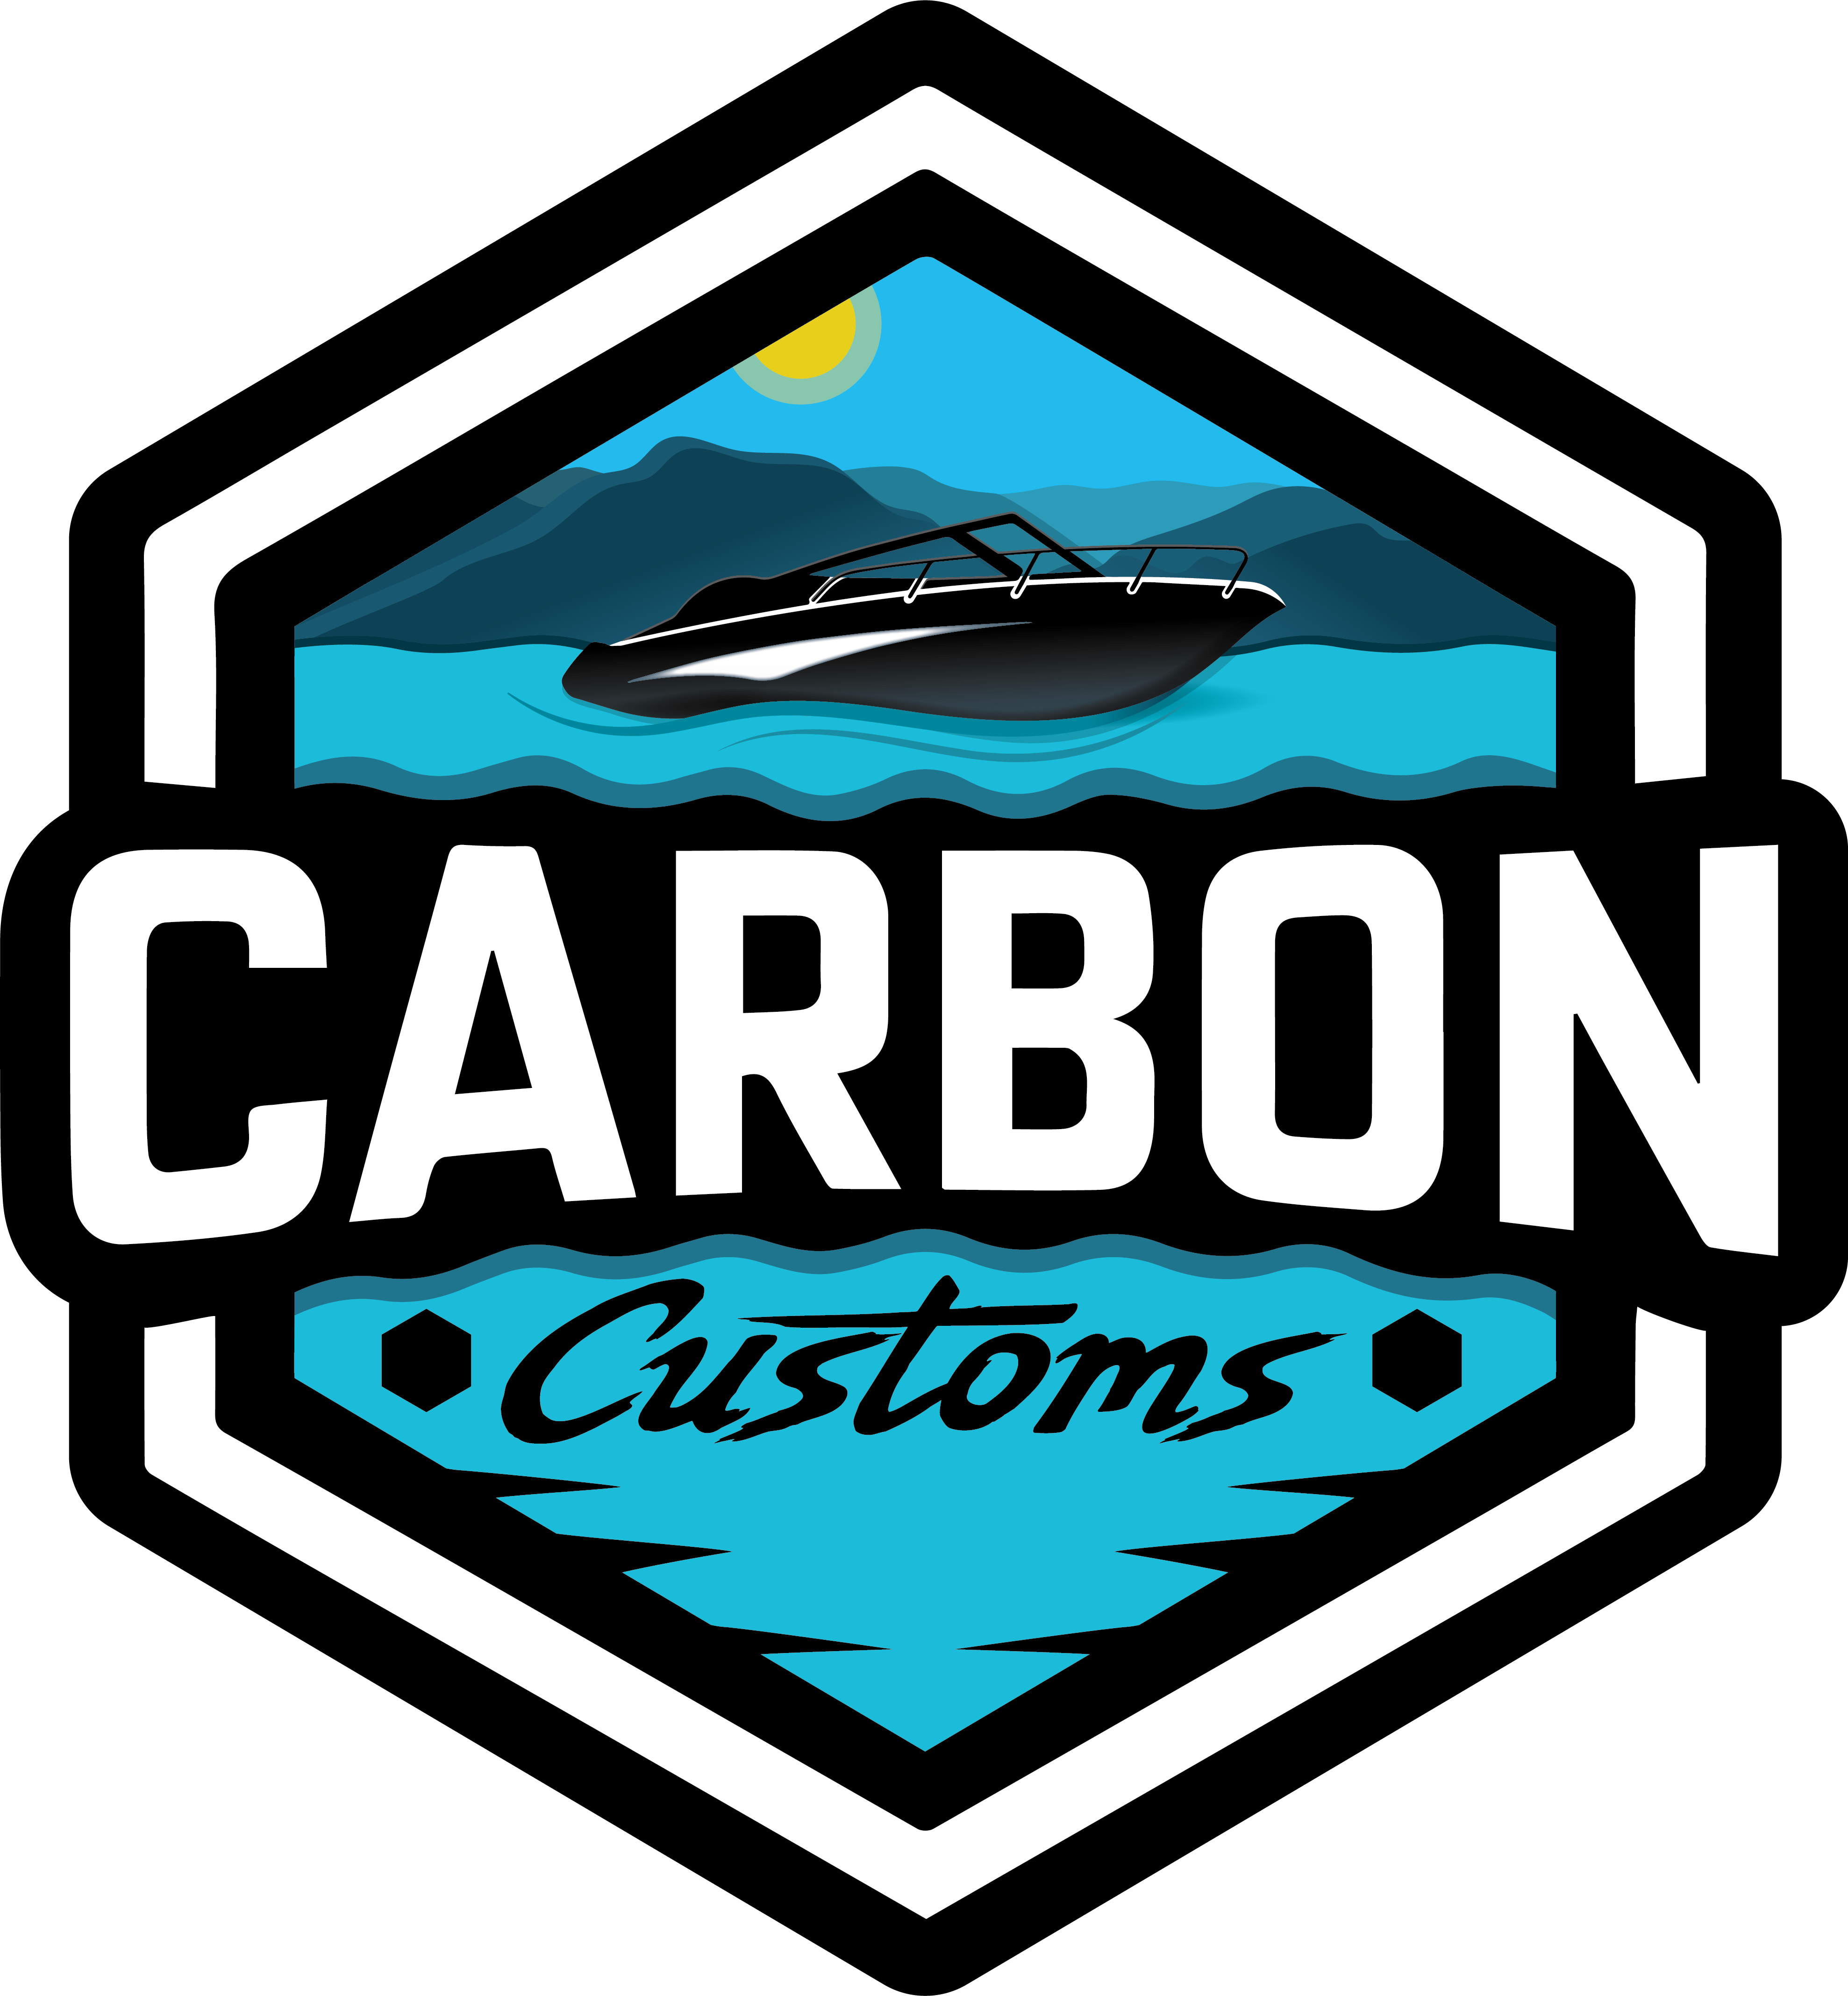 Carbon Customs